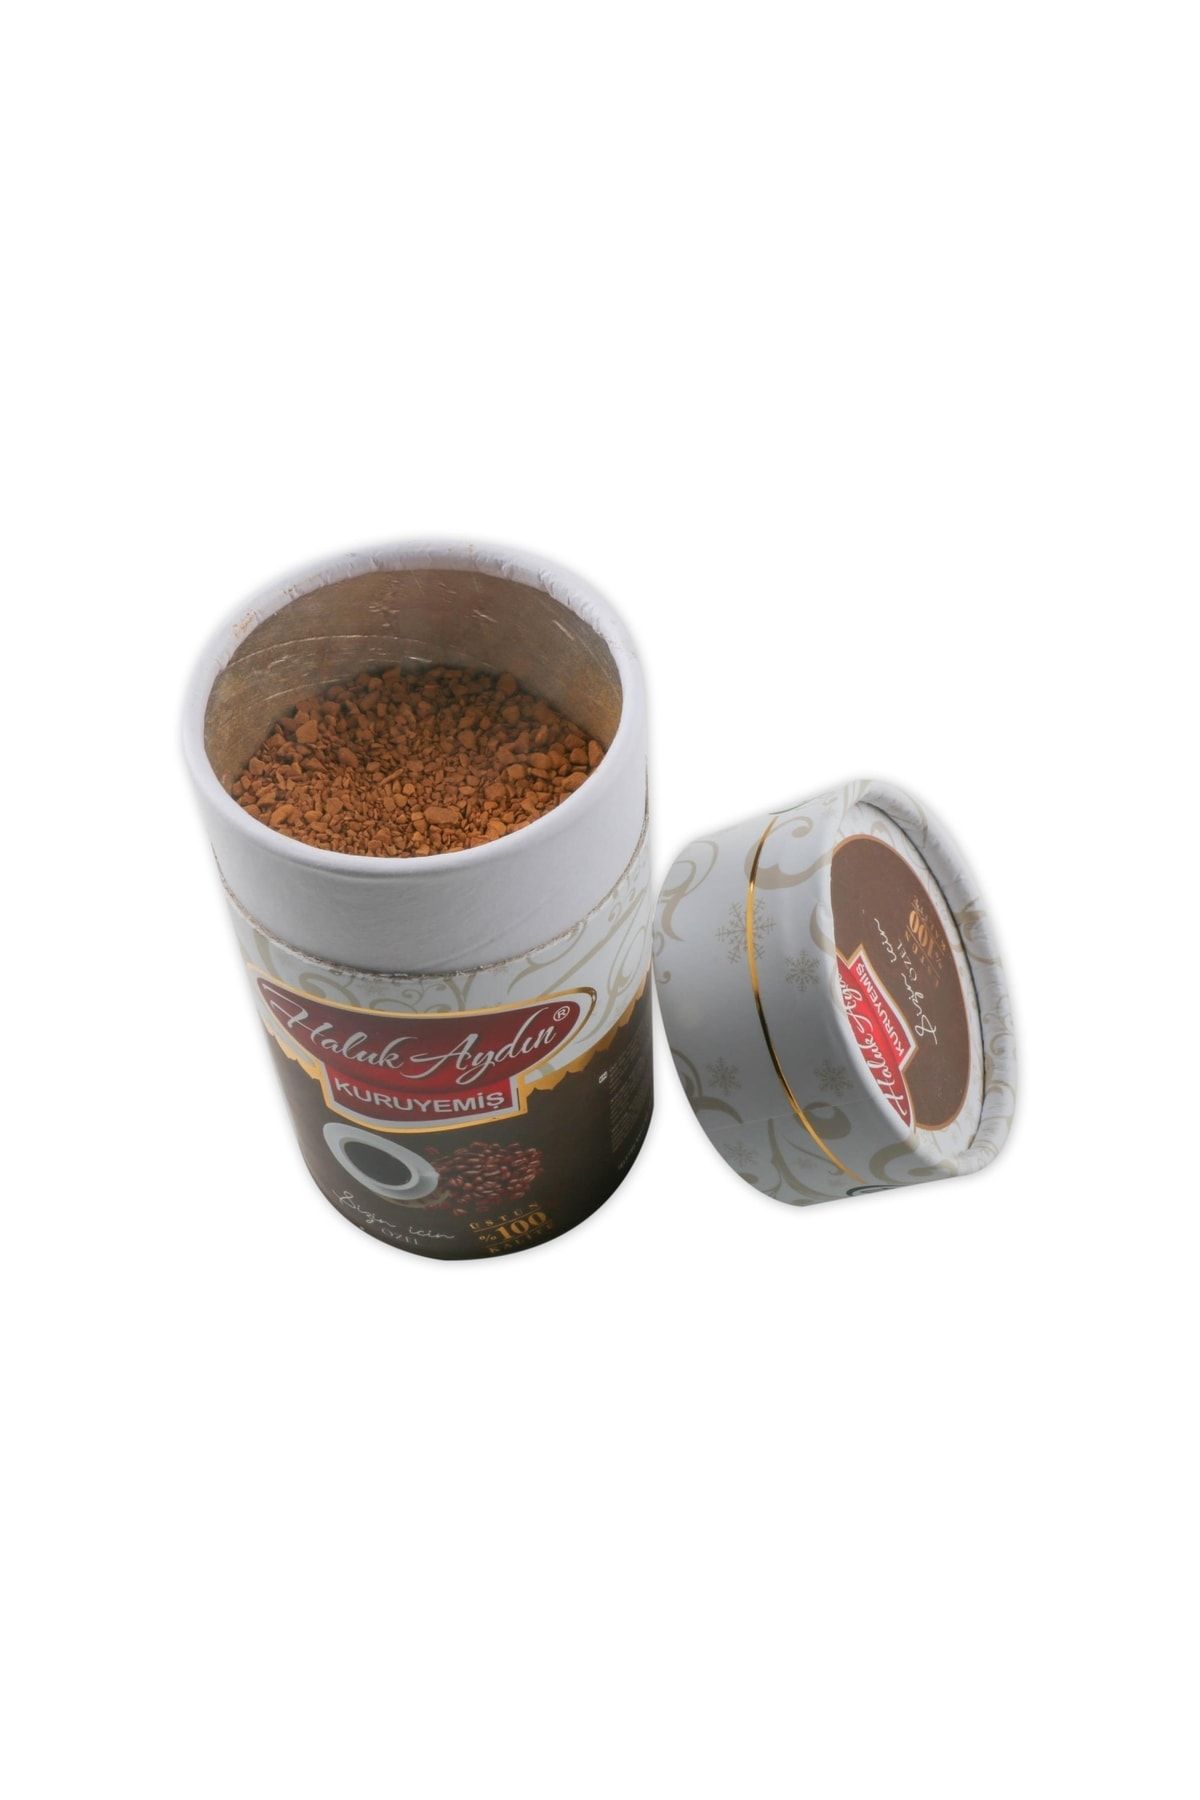 HALUK AYDIN KURUYEMİŞ Gold Kahve ( Granül Kahve ) 130 Gr